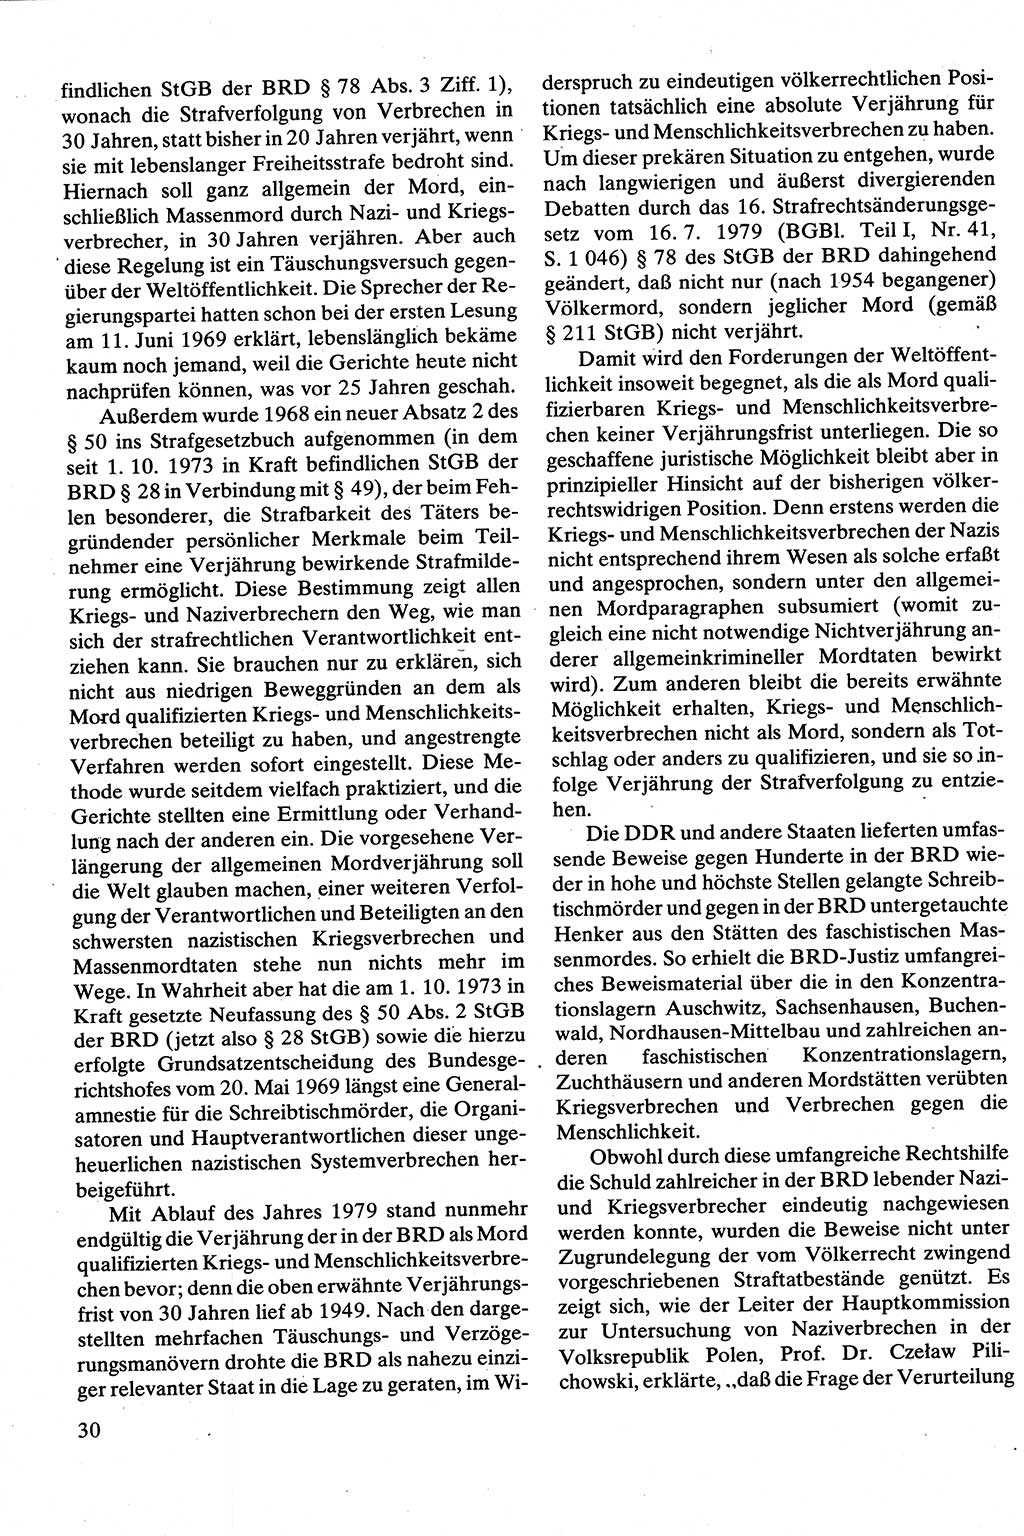 Strafrecht [Deutsche Demokratische Republik (DDR)], Besonderer Teil, Lehrbuch 1981, Seite 30 (Strafr. DDR BT Lb. 1981, S. 30)